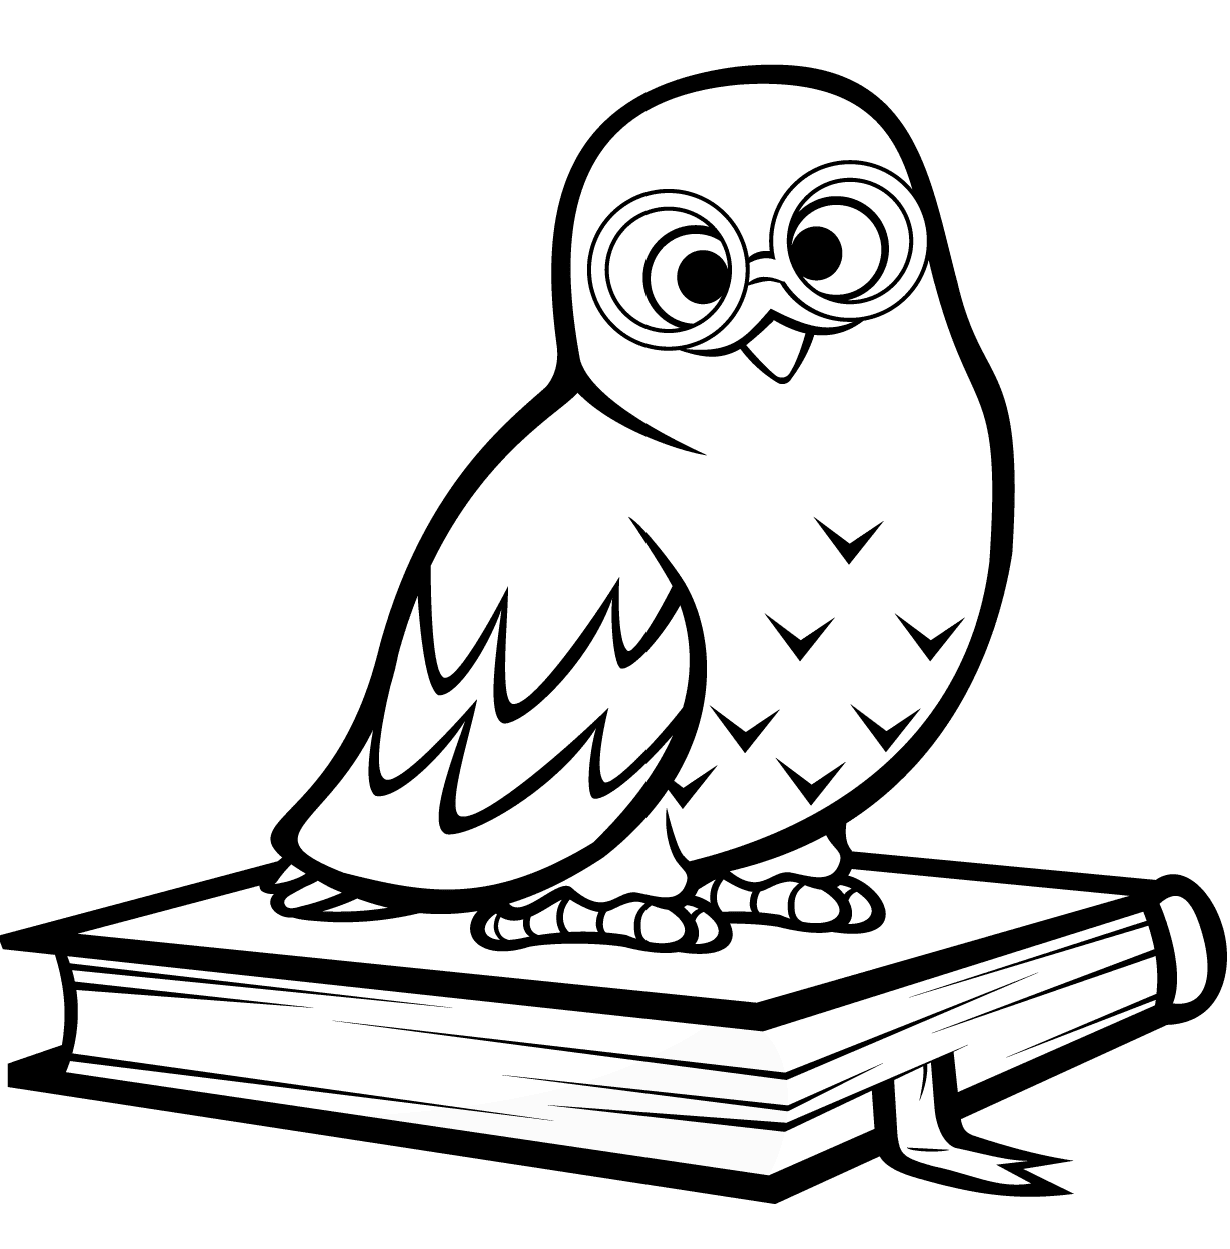 Полярная сова сидит на книге от совы